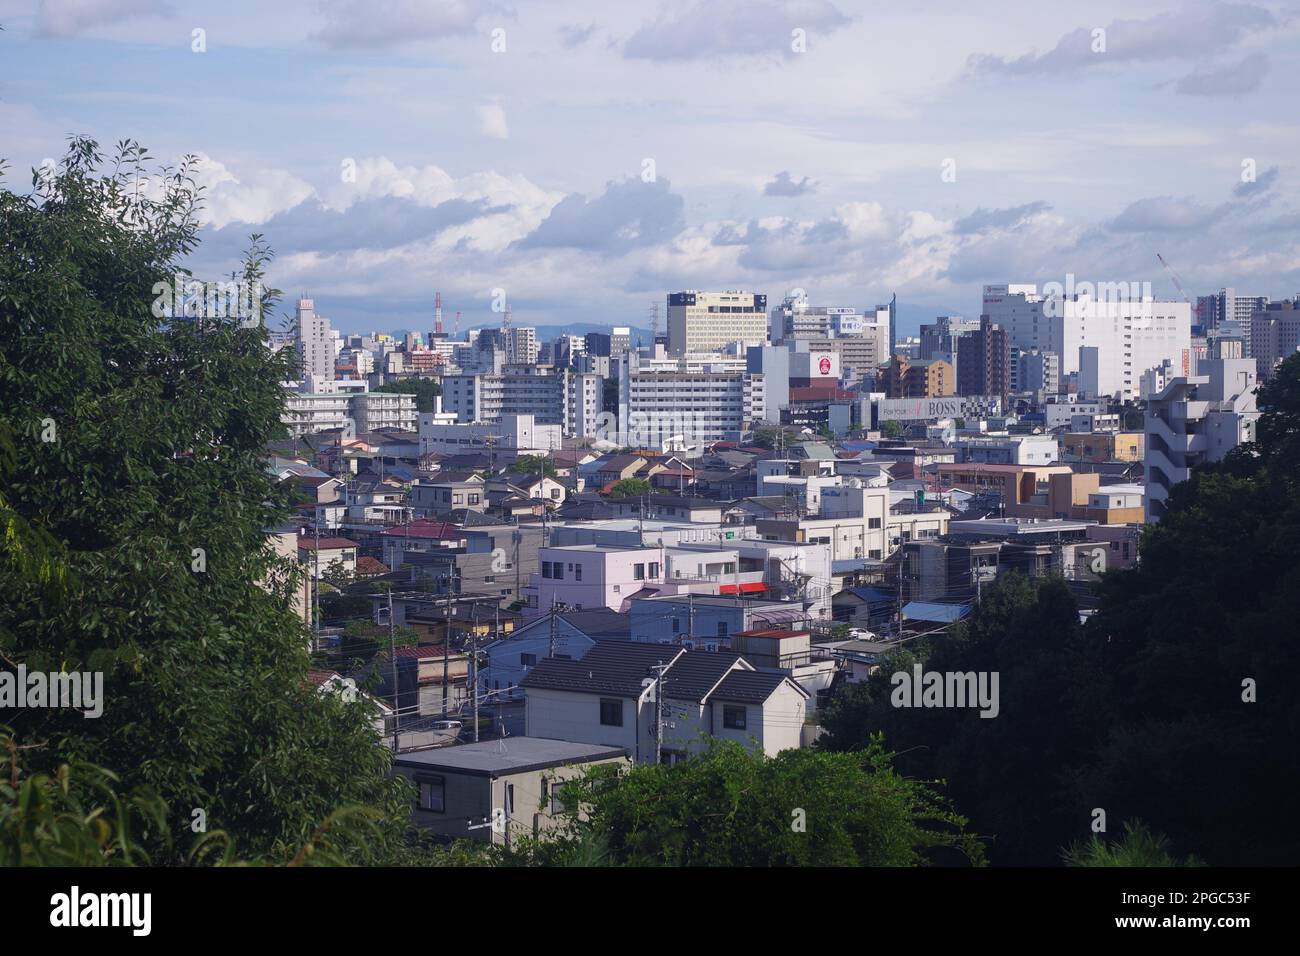 View of Utsunomiya, Japan Stock Photo